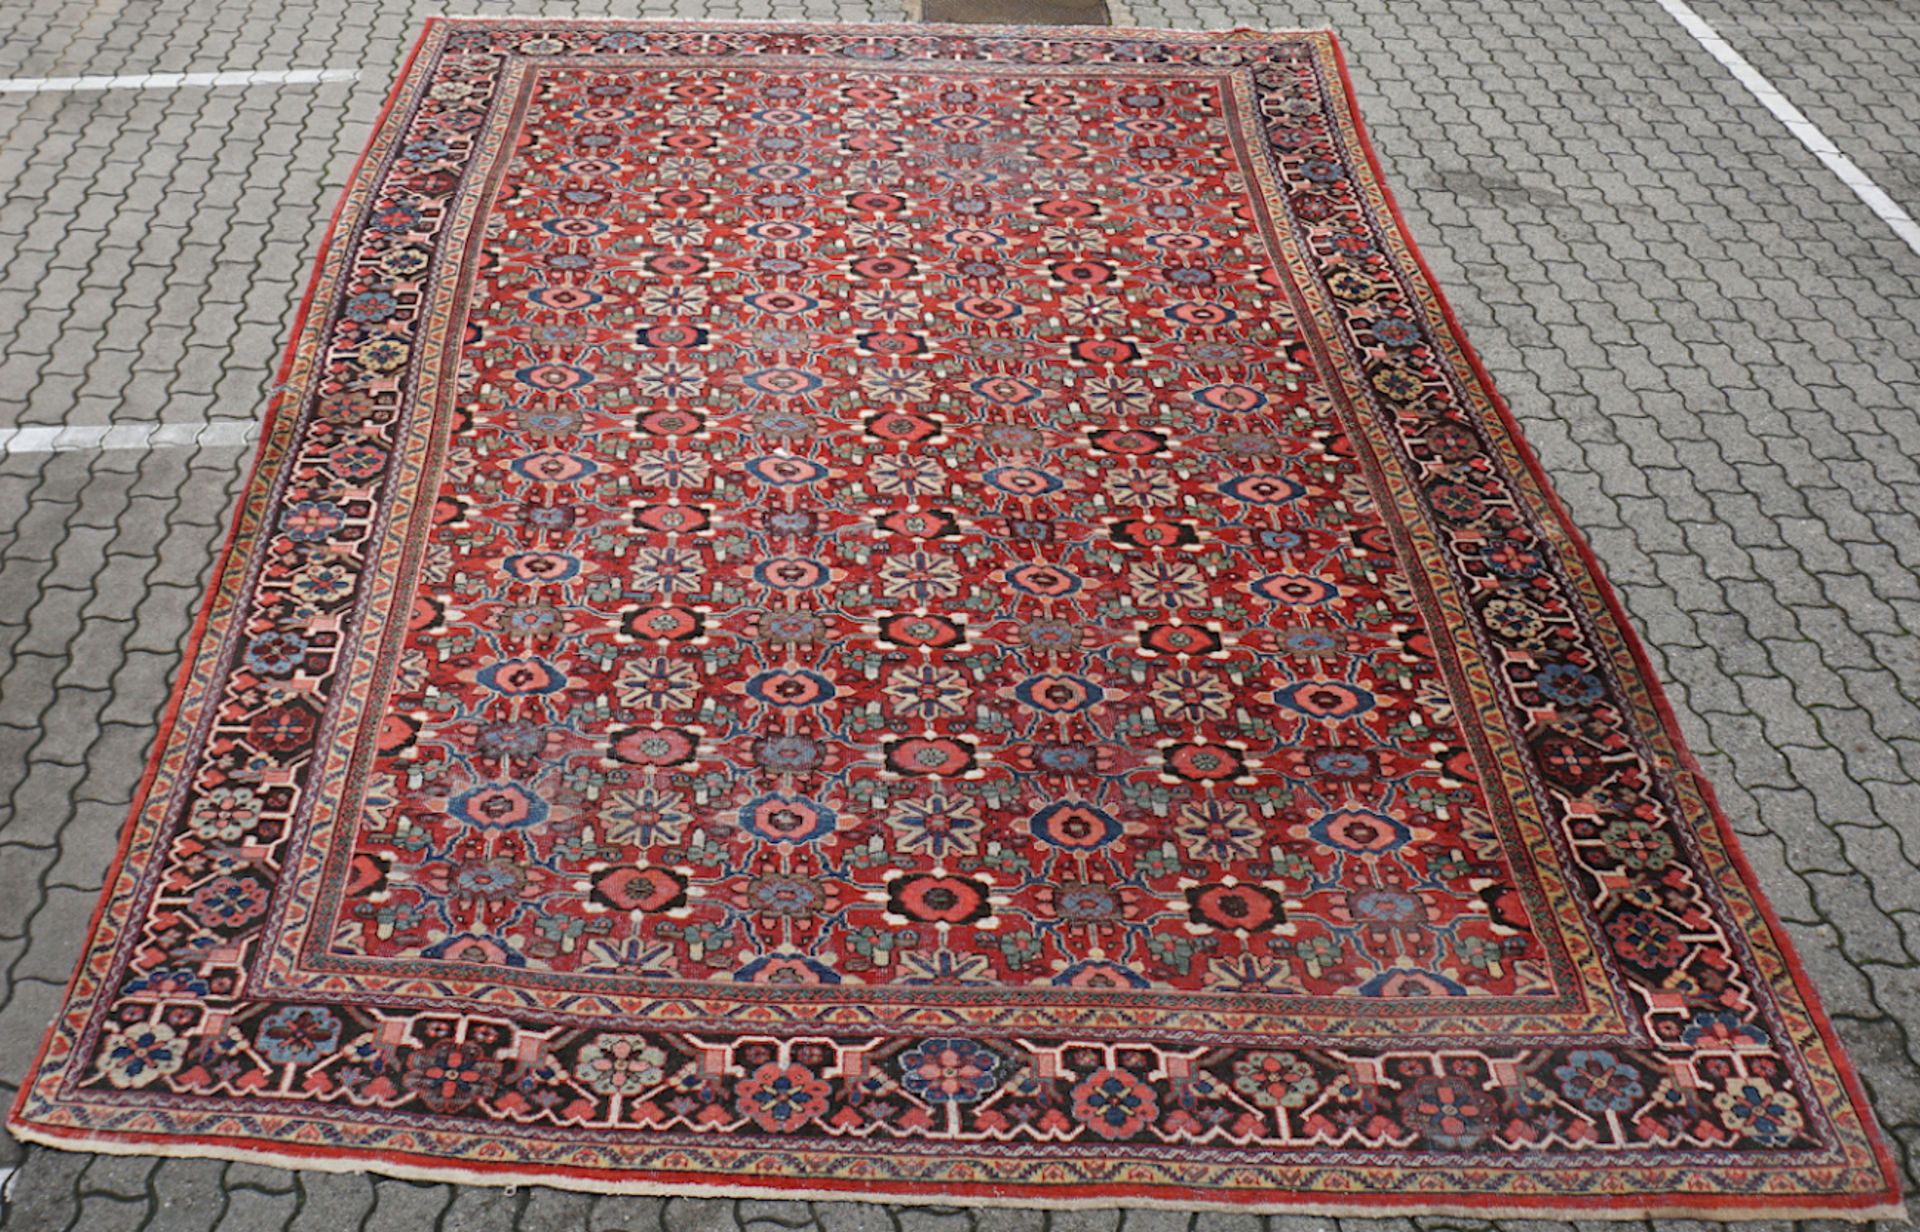 1 Orientteppich wohl um 1920 rotgrundig ornamental-floraler Dekor, ca. 520x330, z.T. besch., Asp.